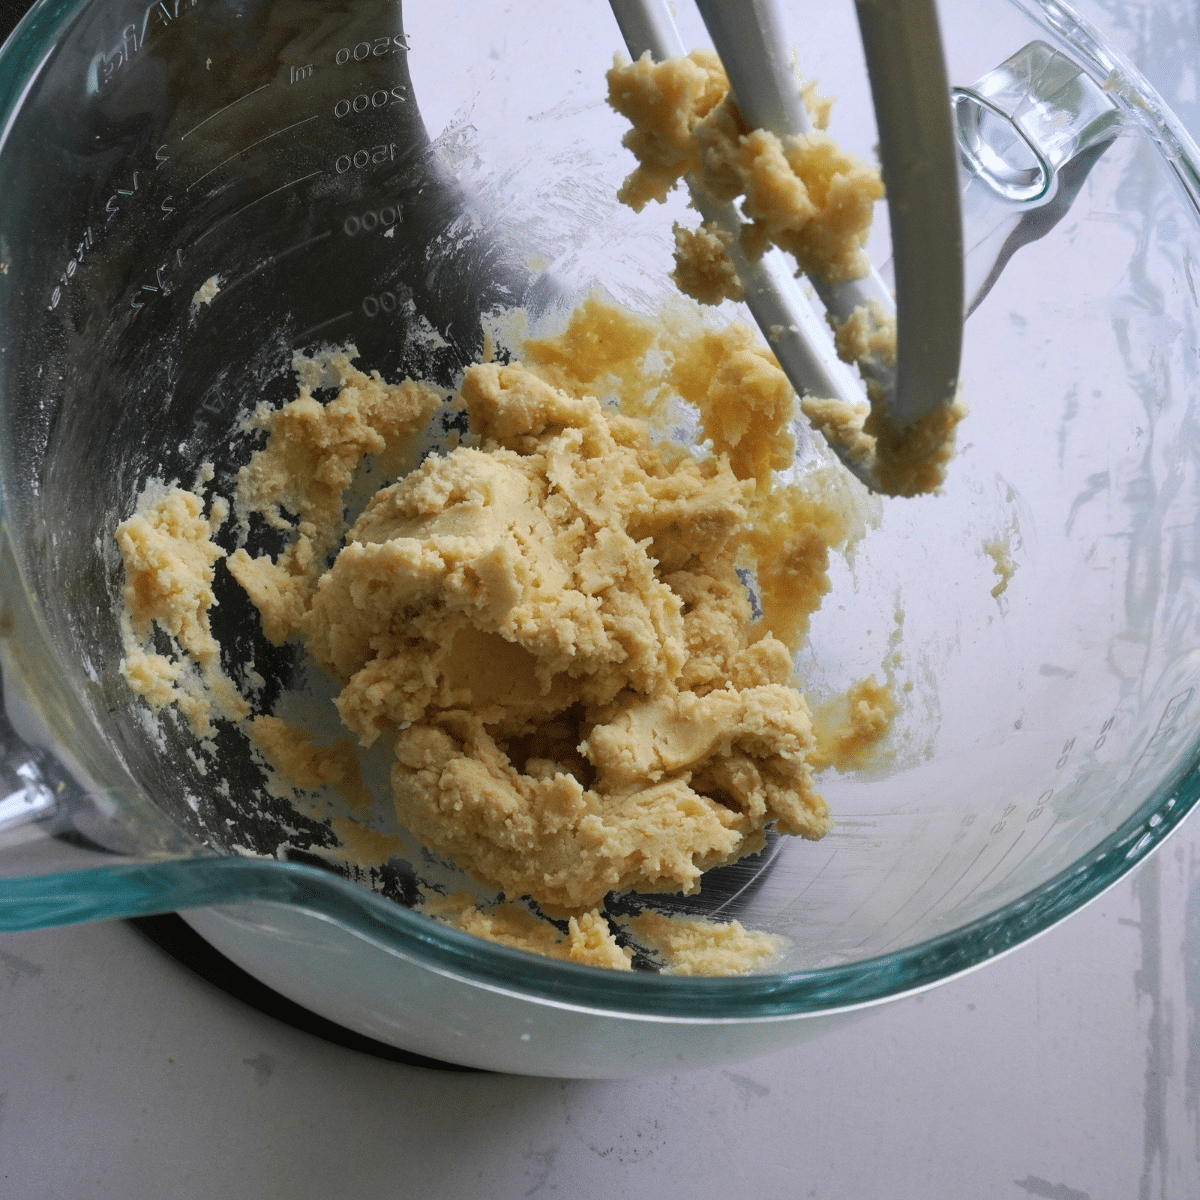 Mix to form a soft dough